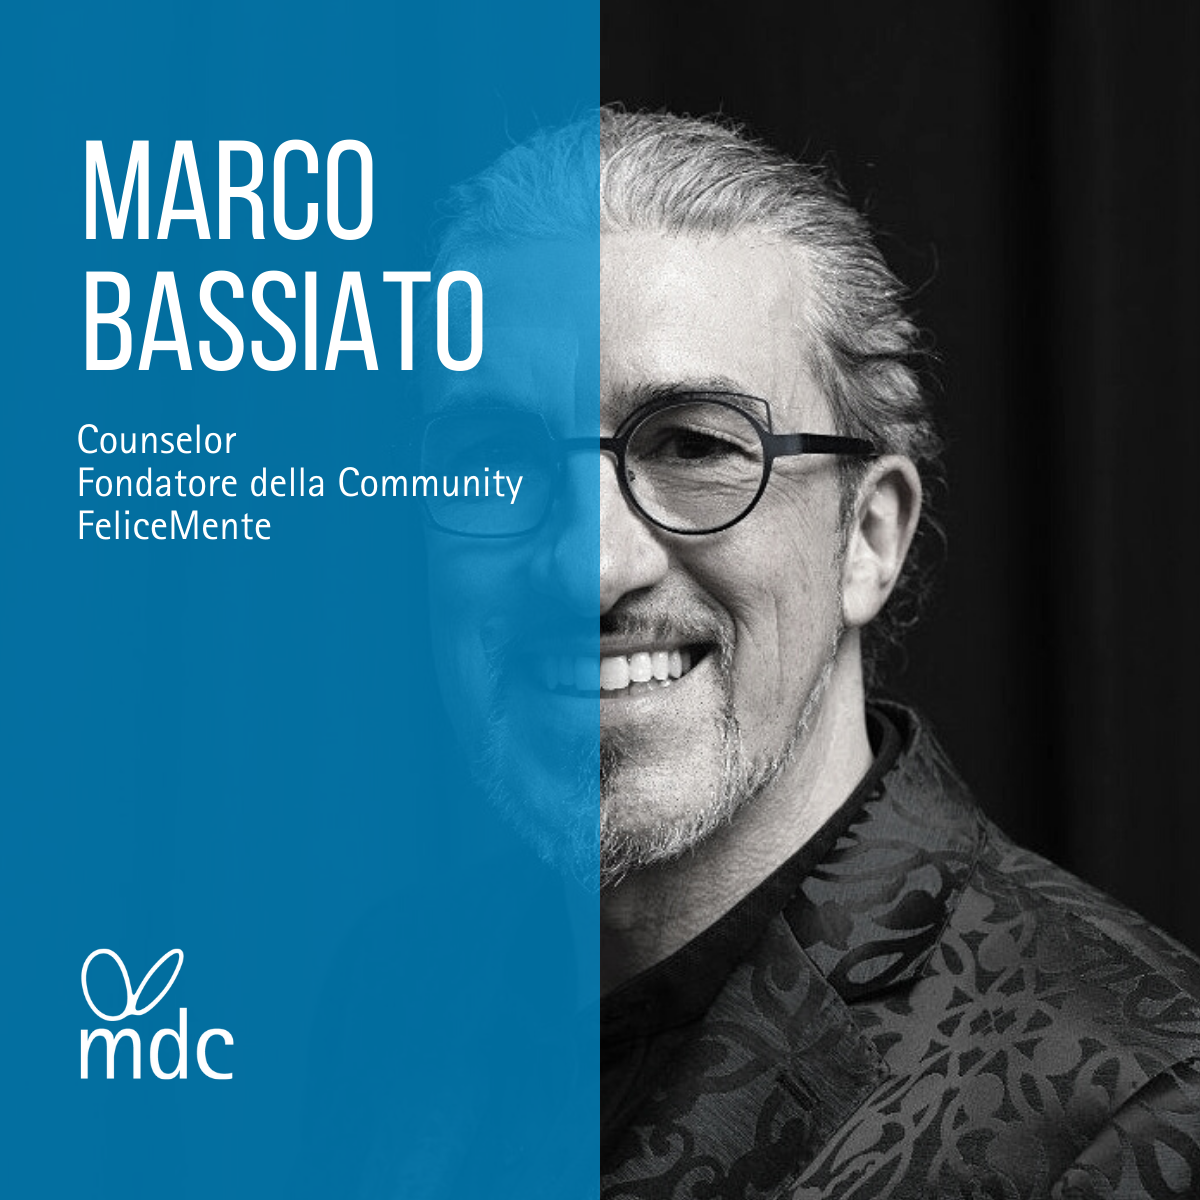 Marco Bassiato